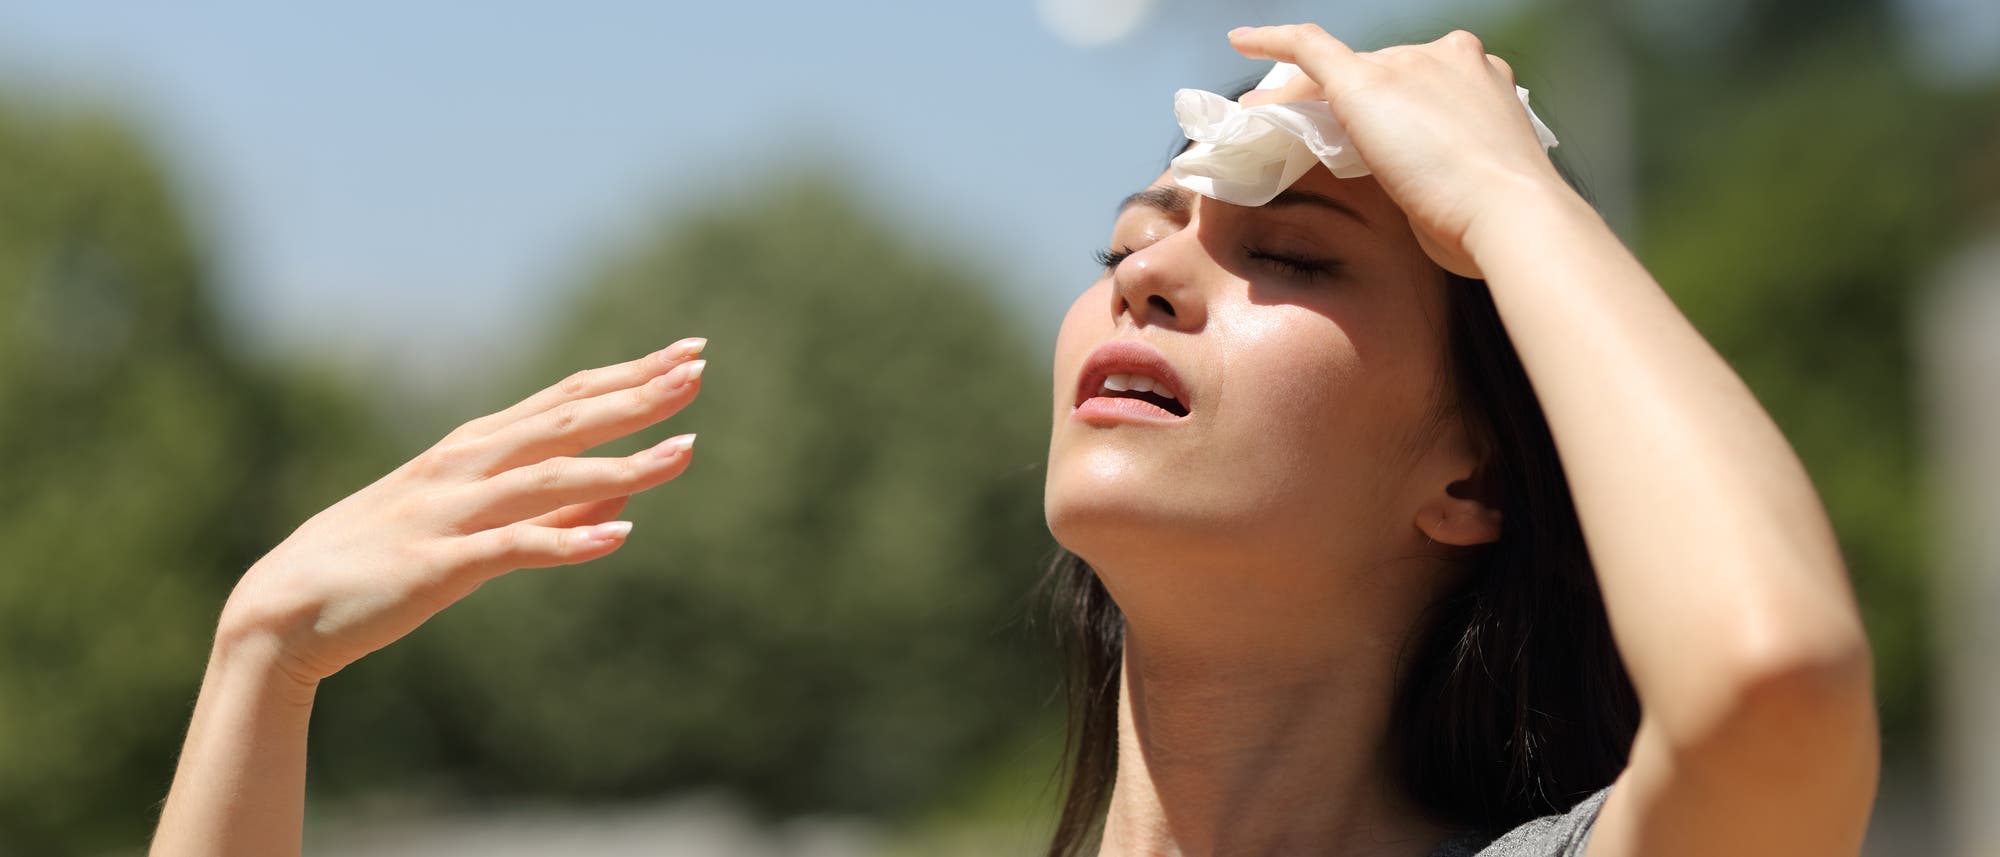 Eine Frau kühlt ihre Stirn an einem heißen Sommertag